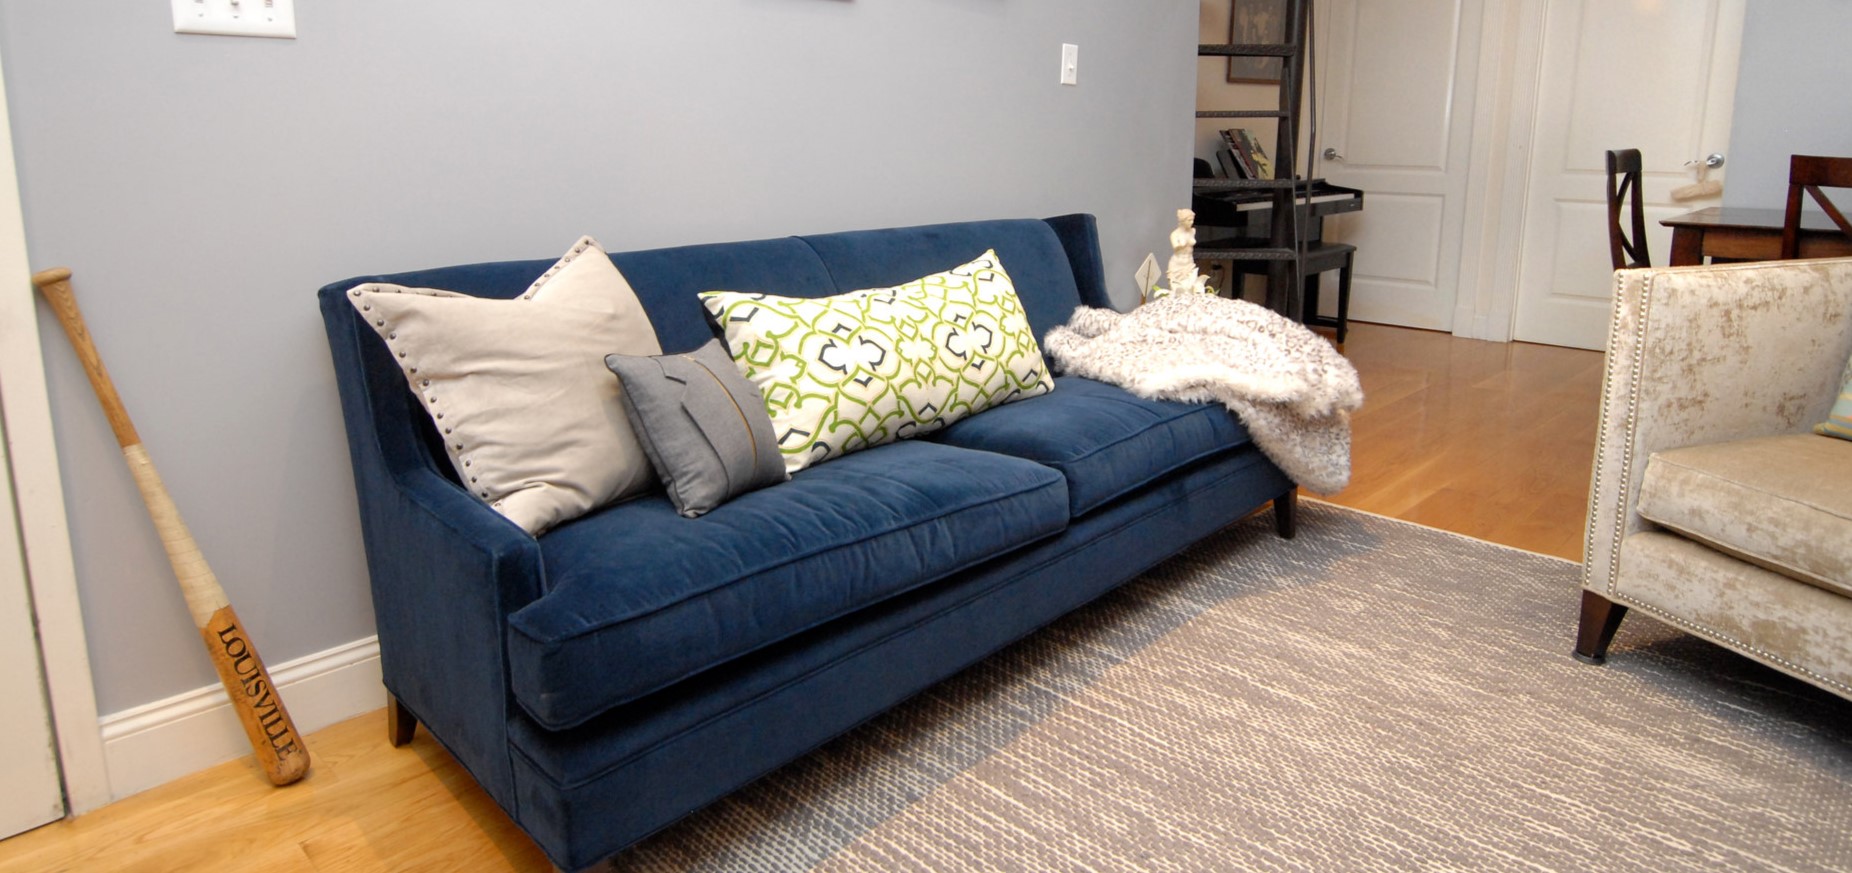 Синий диван является акцентным элементом интерьера